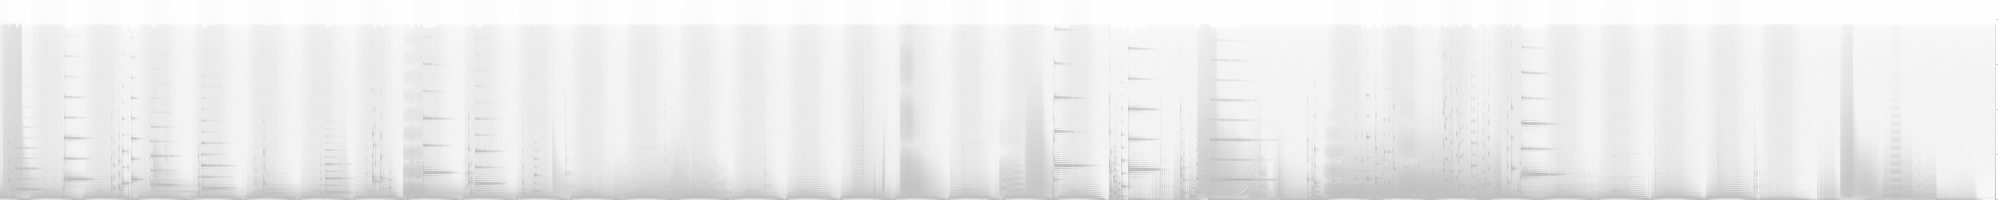 Spectrogram for ETDT - shaft